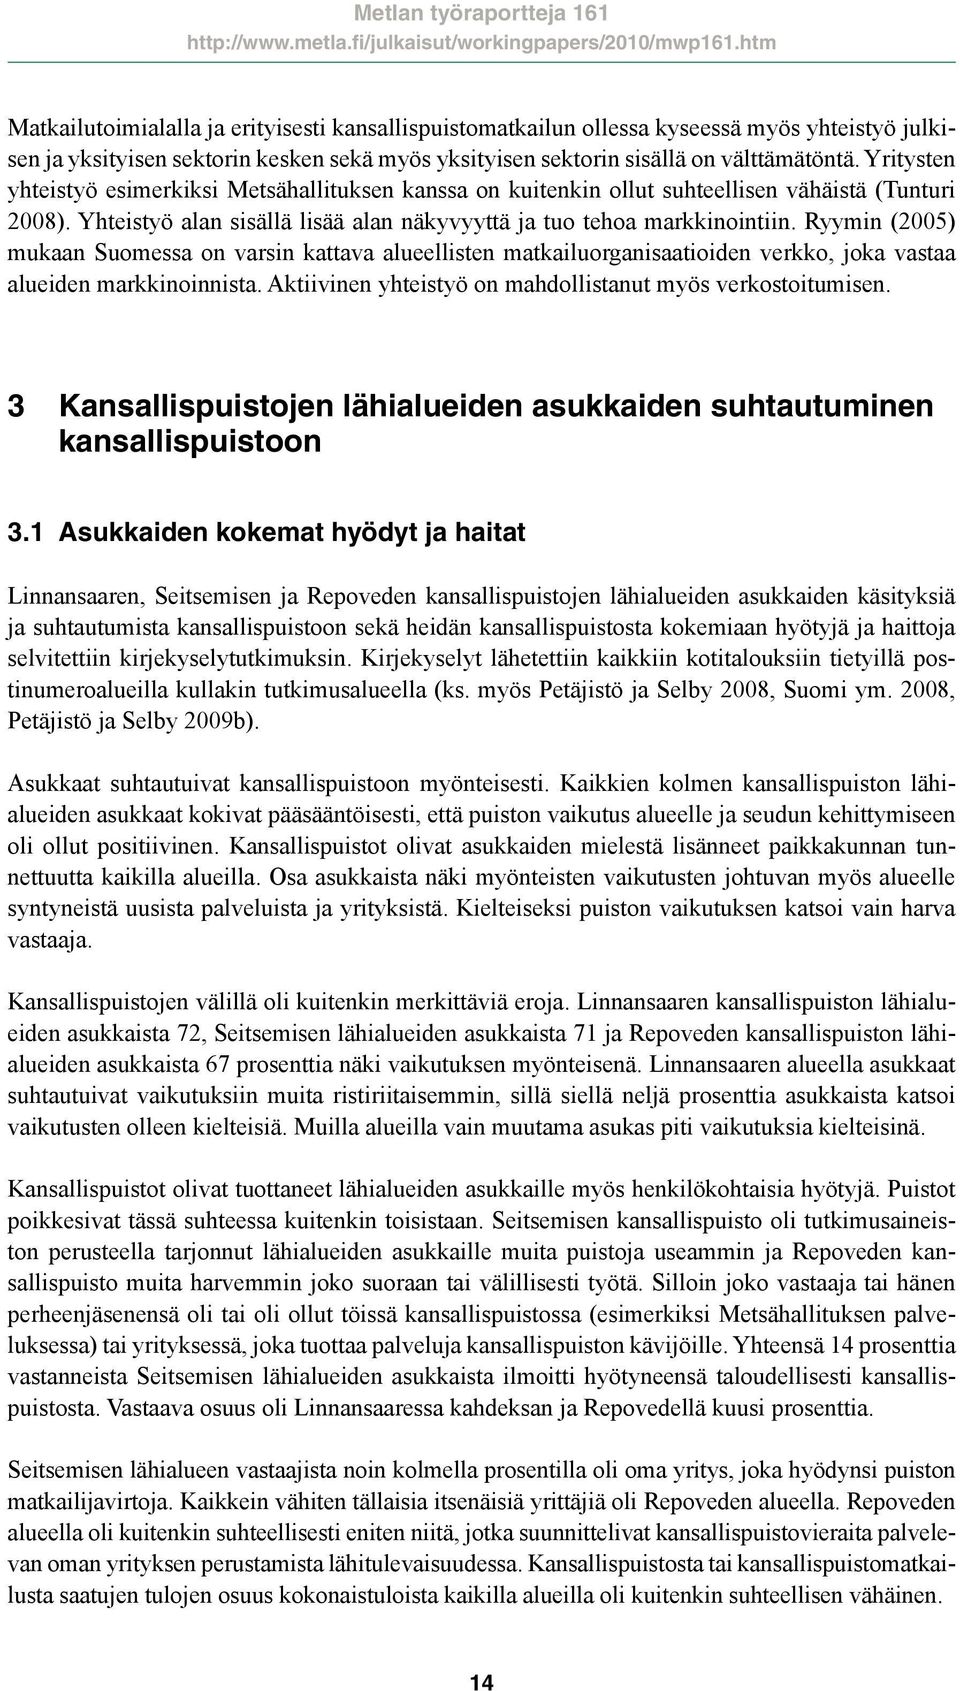 Ryymin (2005) mukaan Suomessa on varsin kattava alueellisten matkailuorganisaatioiden verkko, joka vastaa alueiden markkinoinnista. Aktiivinen yhteistyö on mahdollistanut myös verkostoitumisen.